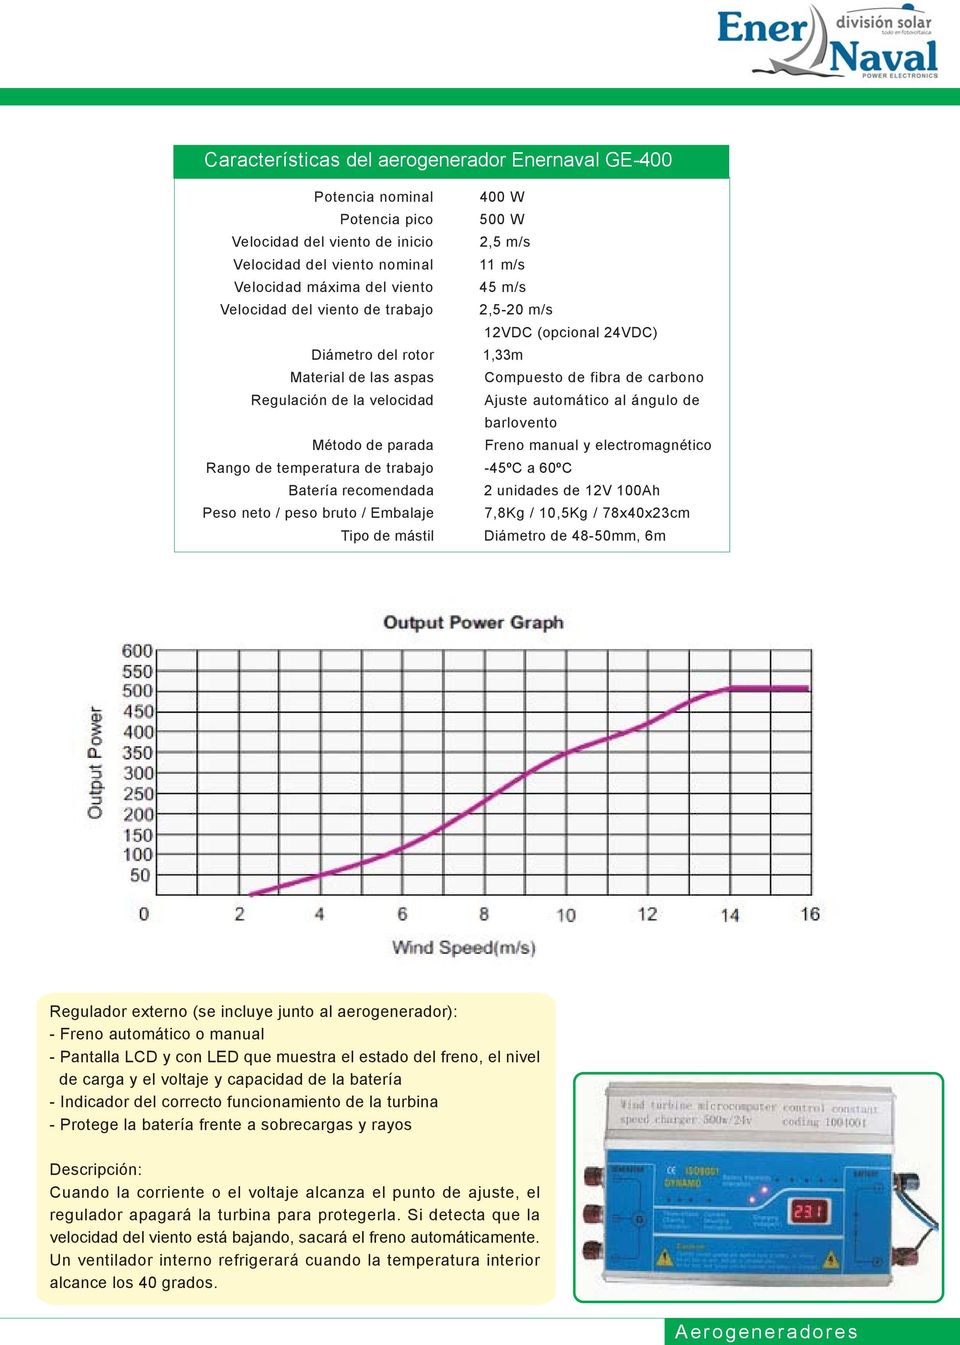 barlovento Método de parada Freno manual y electromagnético Rango de temperatura de trabajo -45ºC a 60ºC Batería recomendada 2 unidades de 12V 100Ah Peso neto / peso bruto / Embalaje 7,8Kg / 10,5Kg /